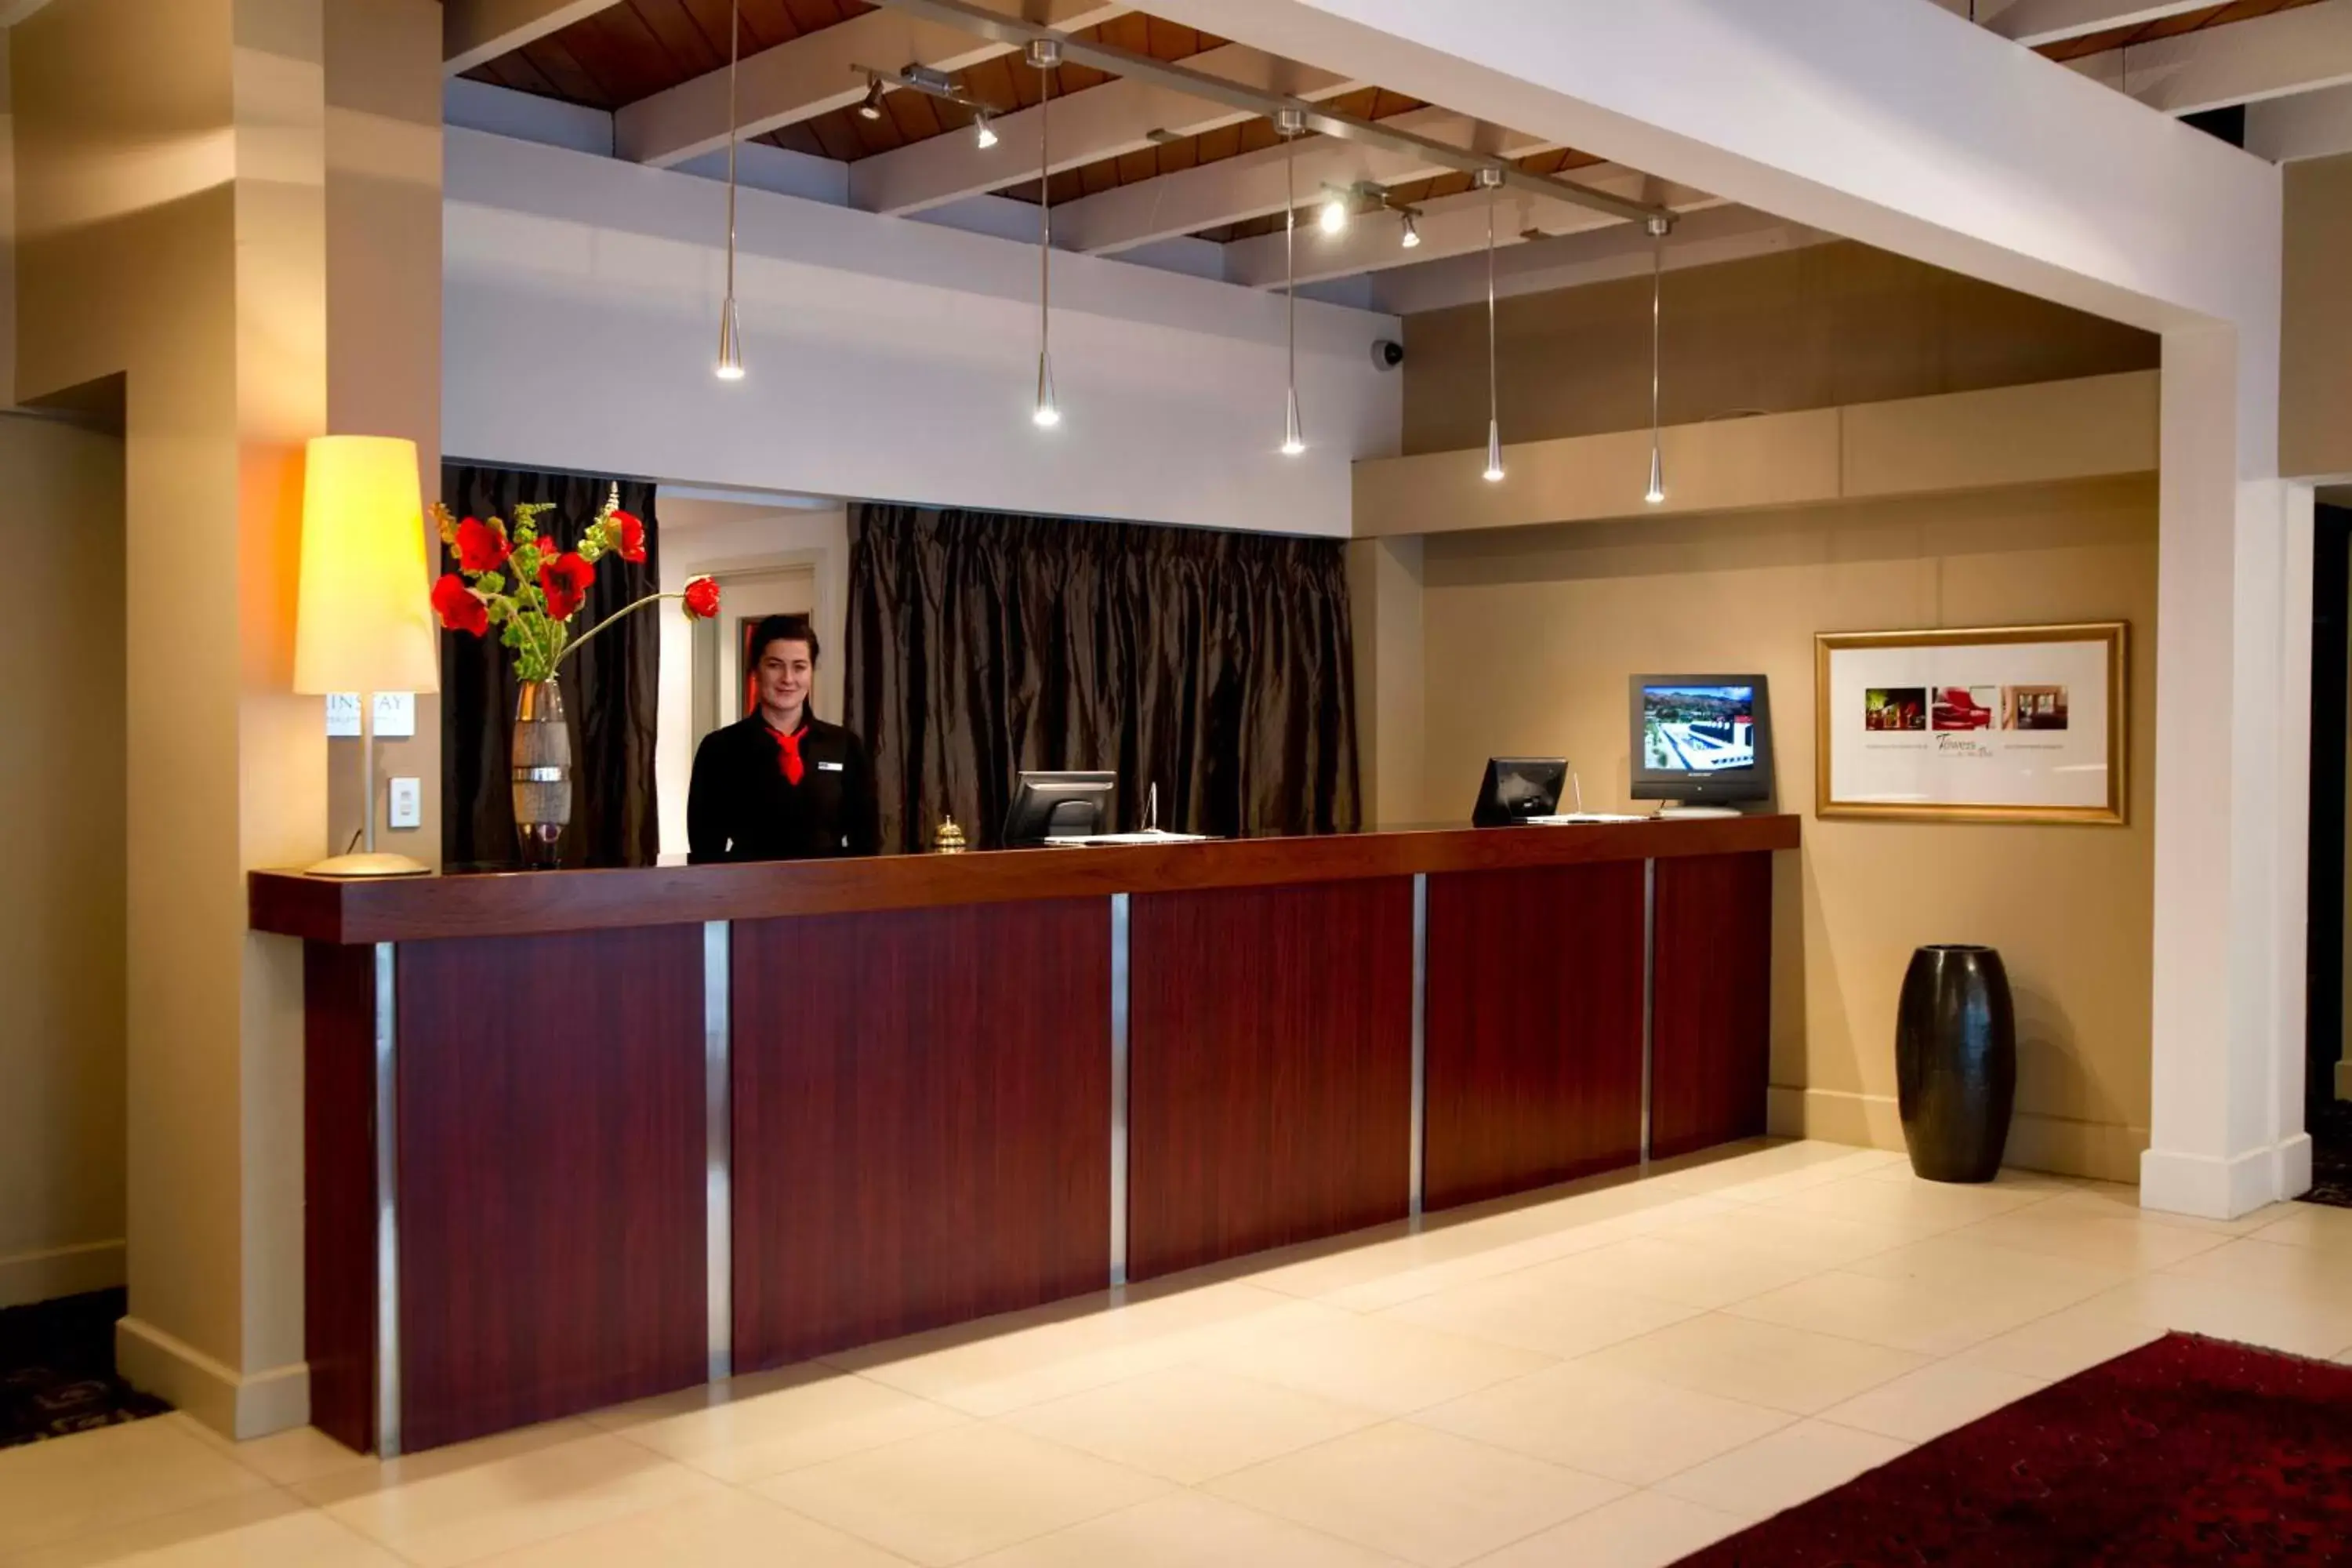 Lobby or reception, Lobby/Reception in The Ashley Hotel Greymouth